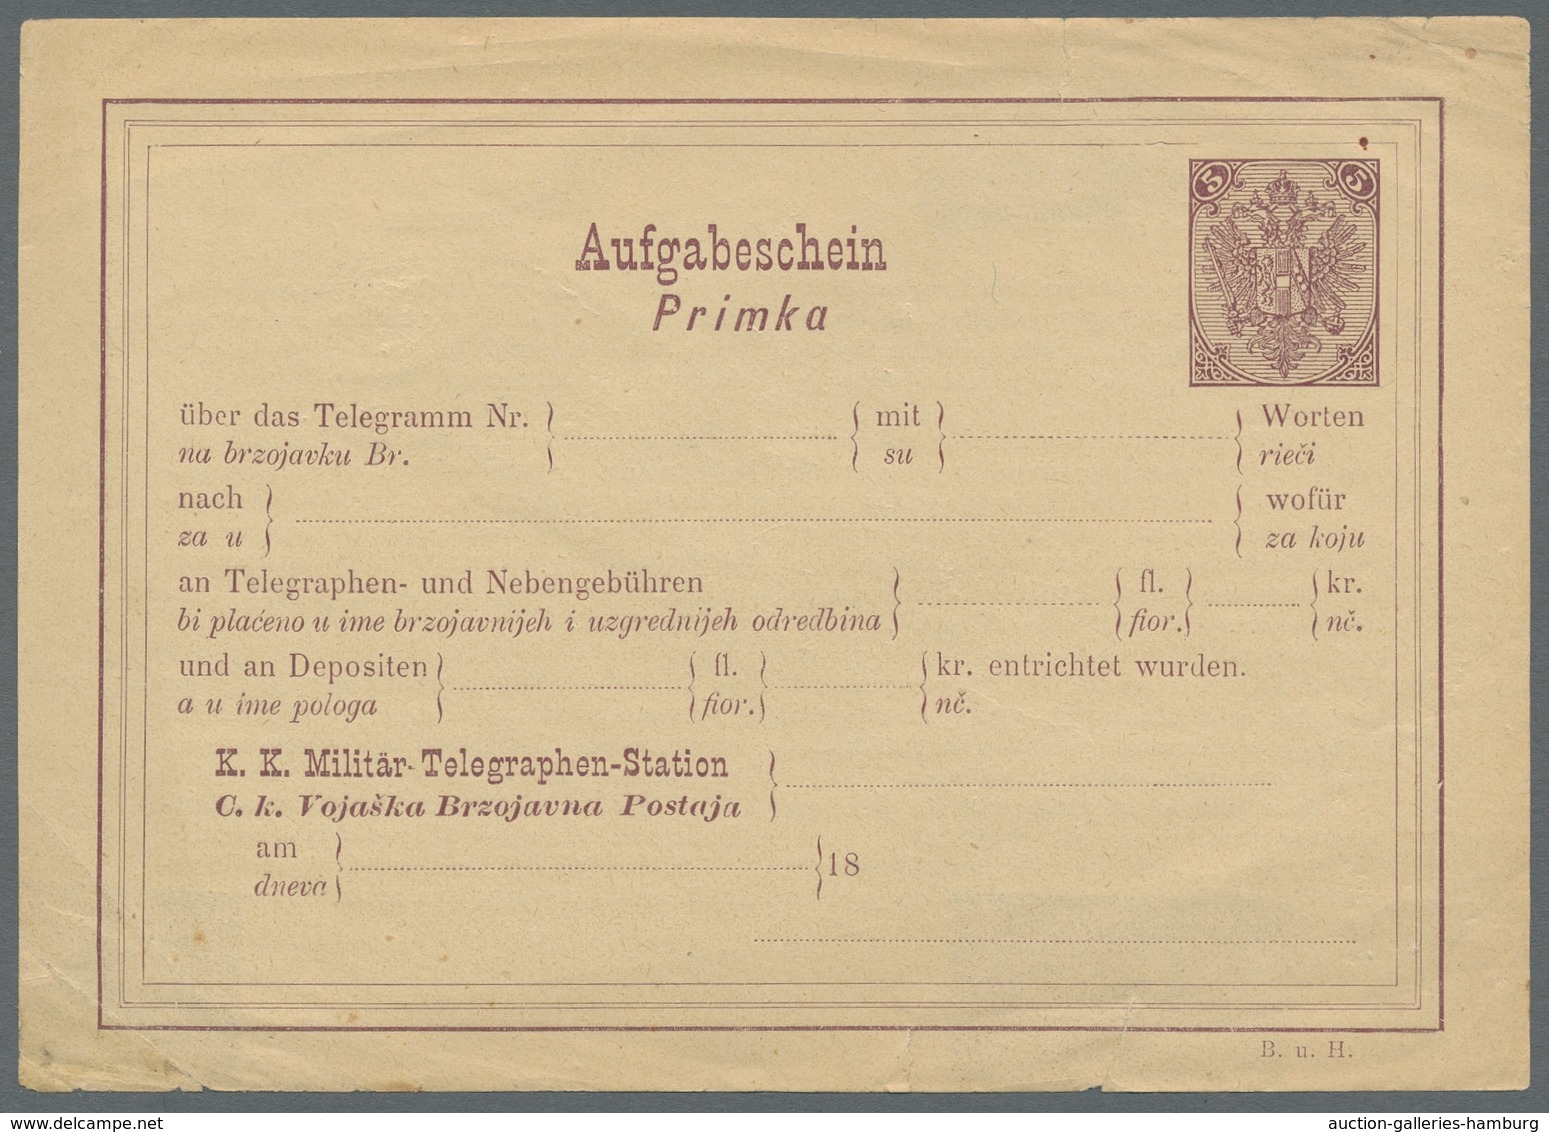 Bosnien und Herzegowina (Österreich 1879/1918) - Portomarken: 1894-1918, hochwertige Sammlung der Po